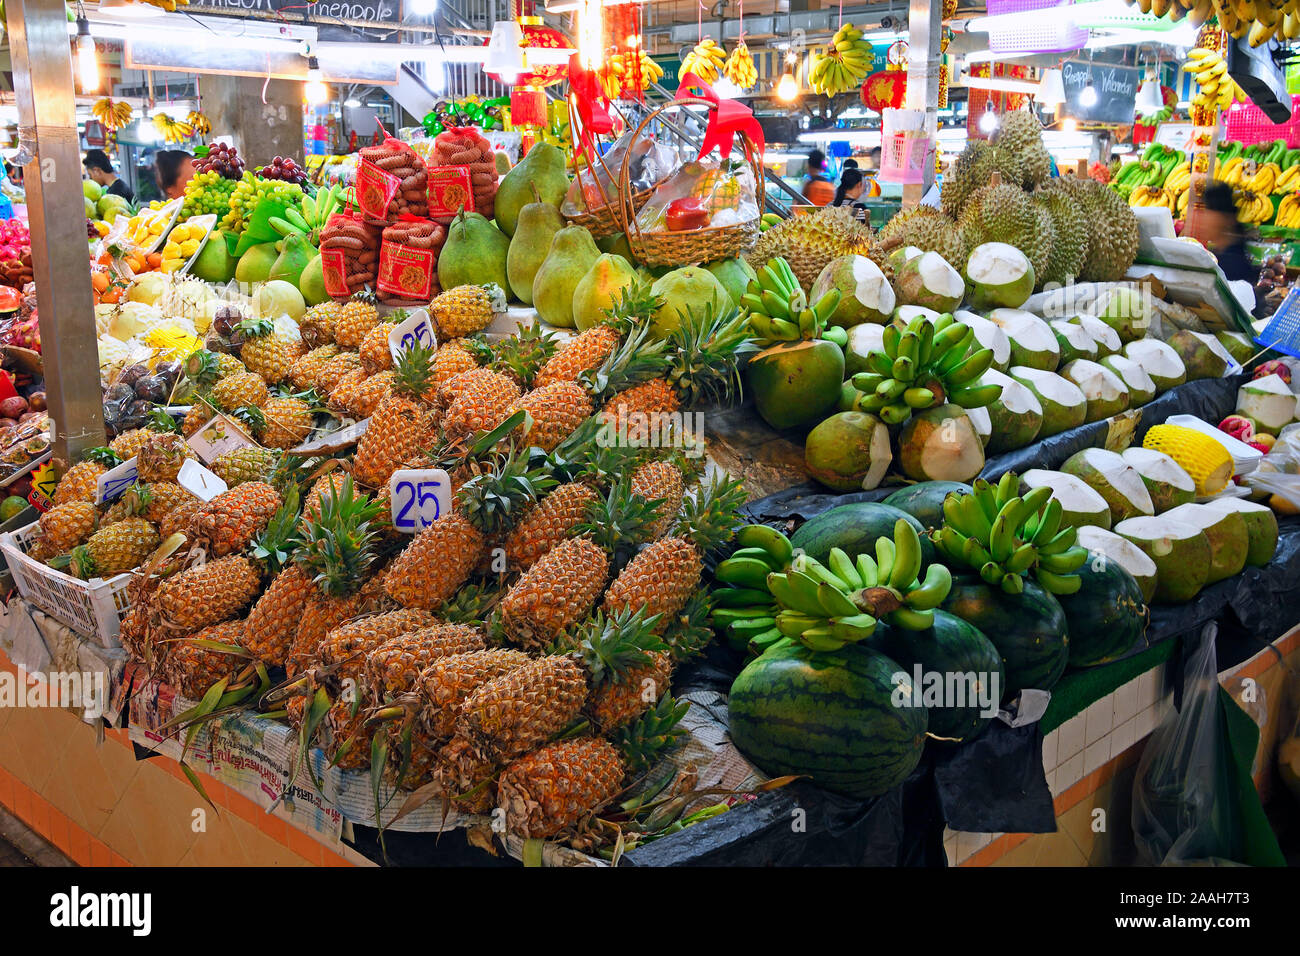 Typische Stände mit riesiger Auswahl eine frischem Obst und Gemüse mit dem Banzaan frische Markt, Patong Beach, Phuket, Thailand Stockfoto